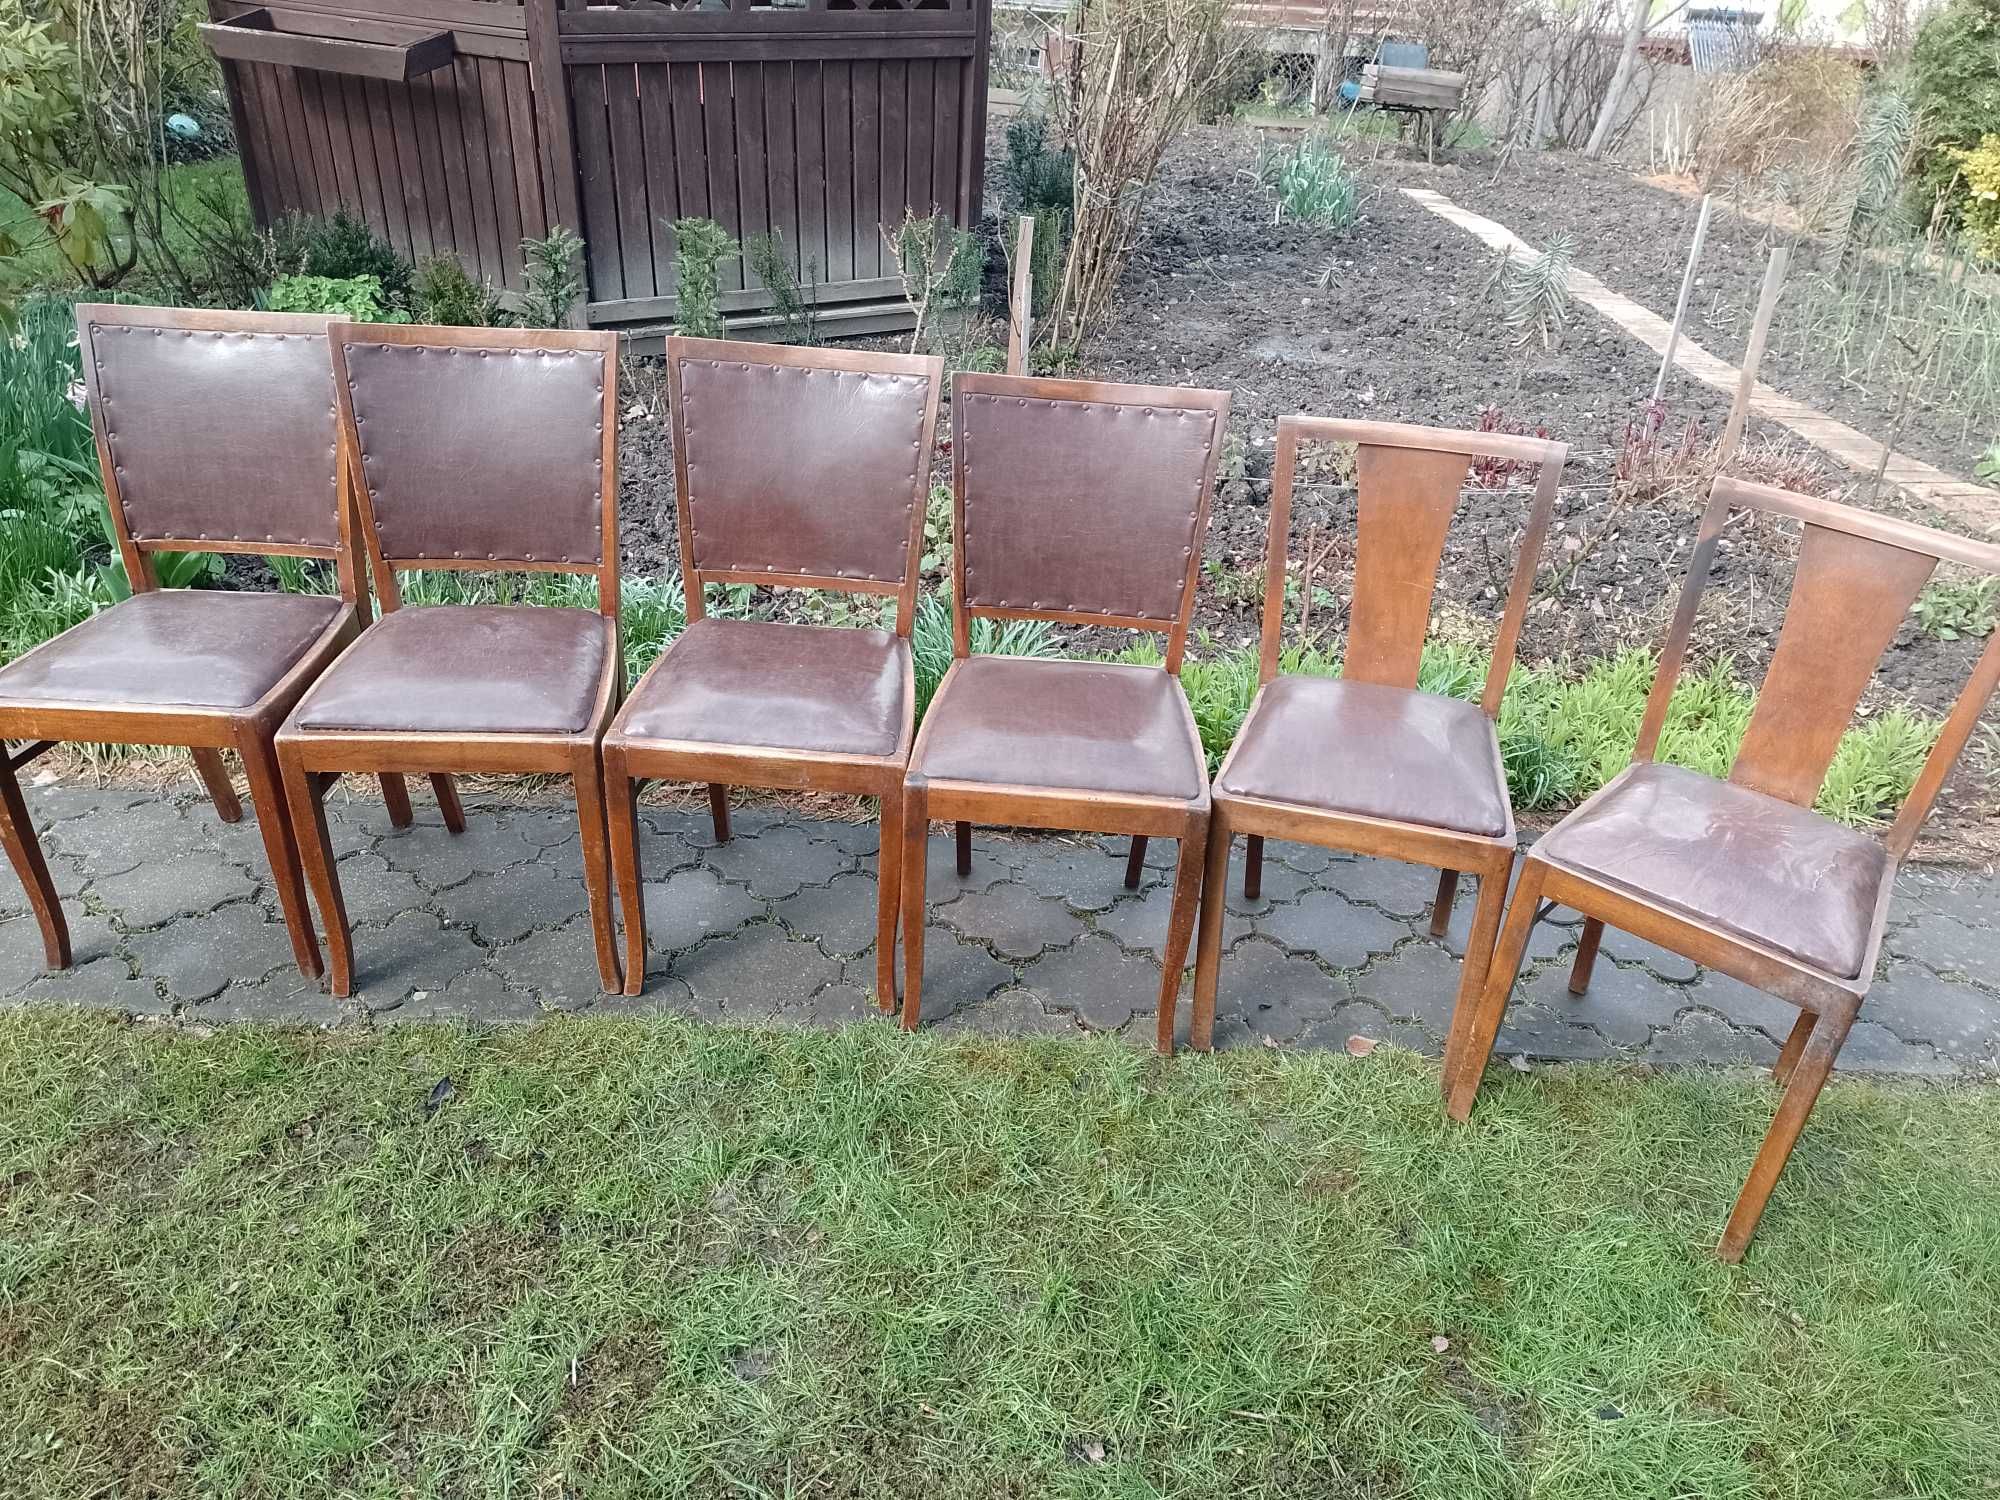 Stare gięte krzesła drewniane sprężynowe siedziska obite skayem - 6szt